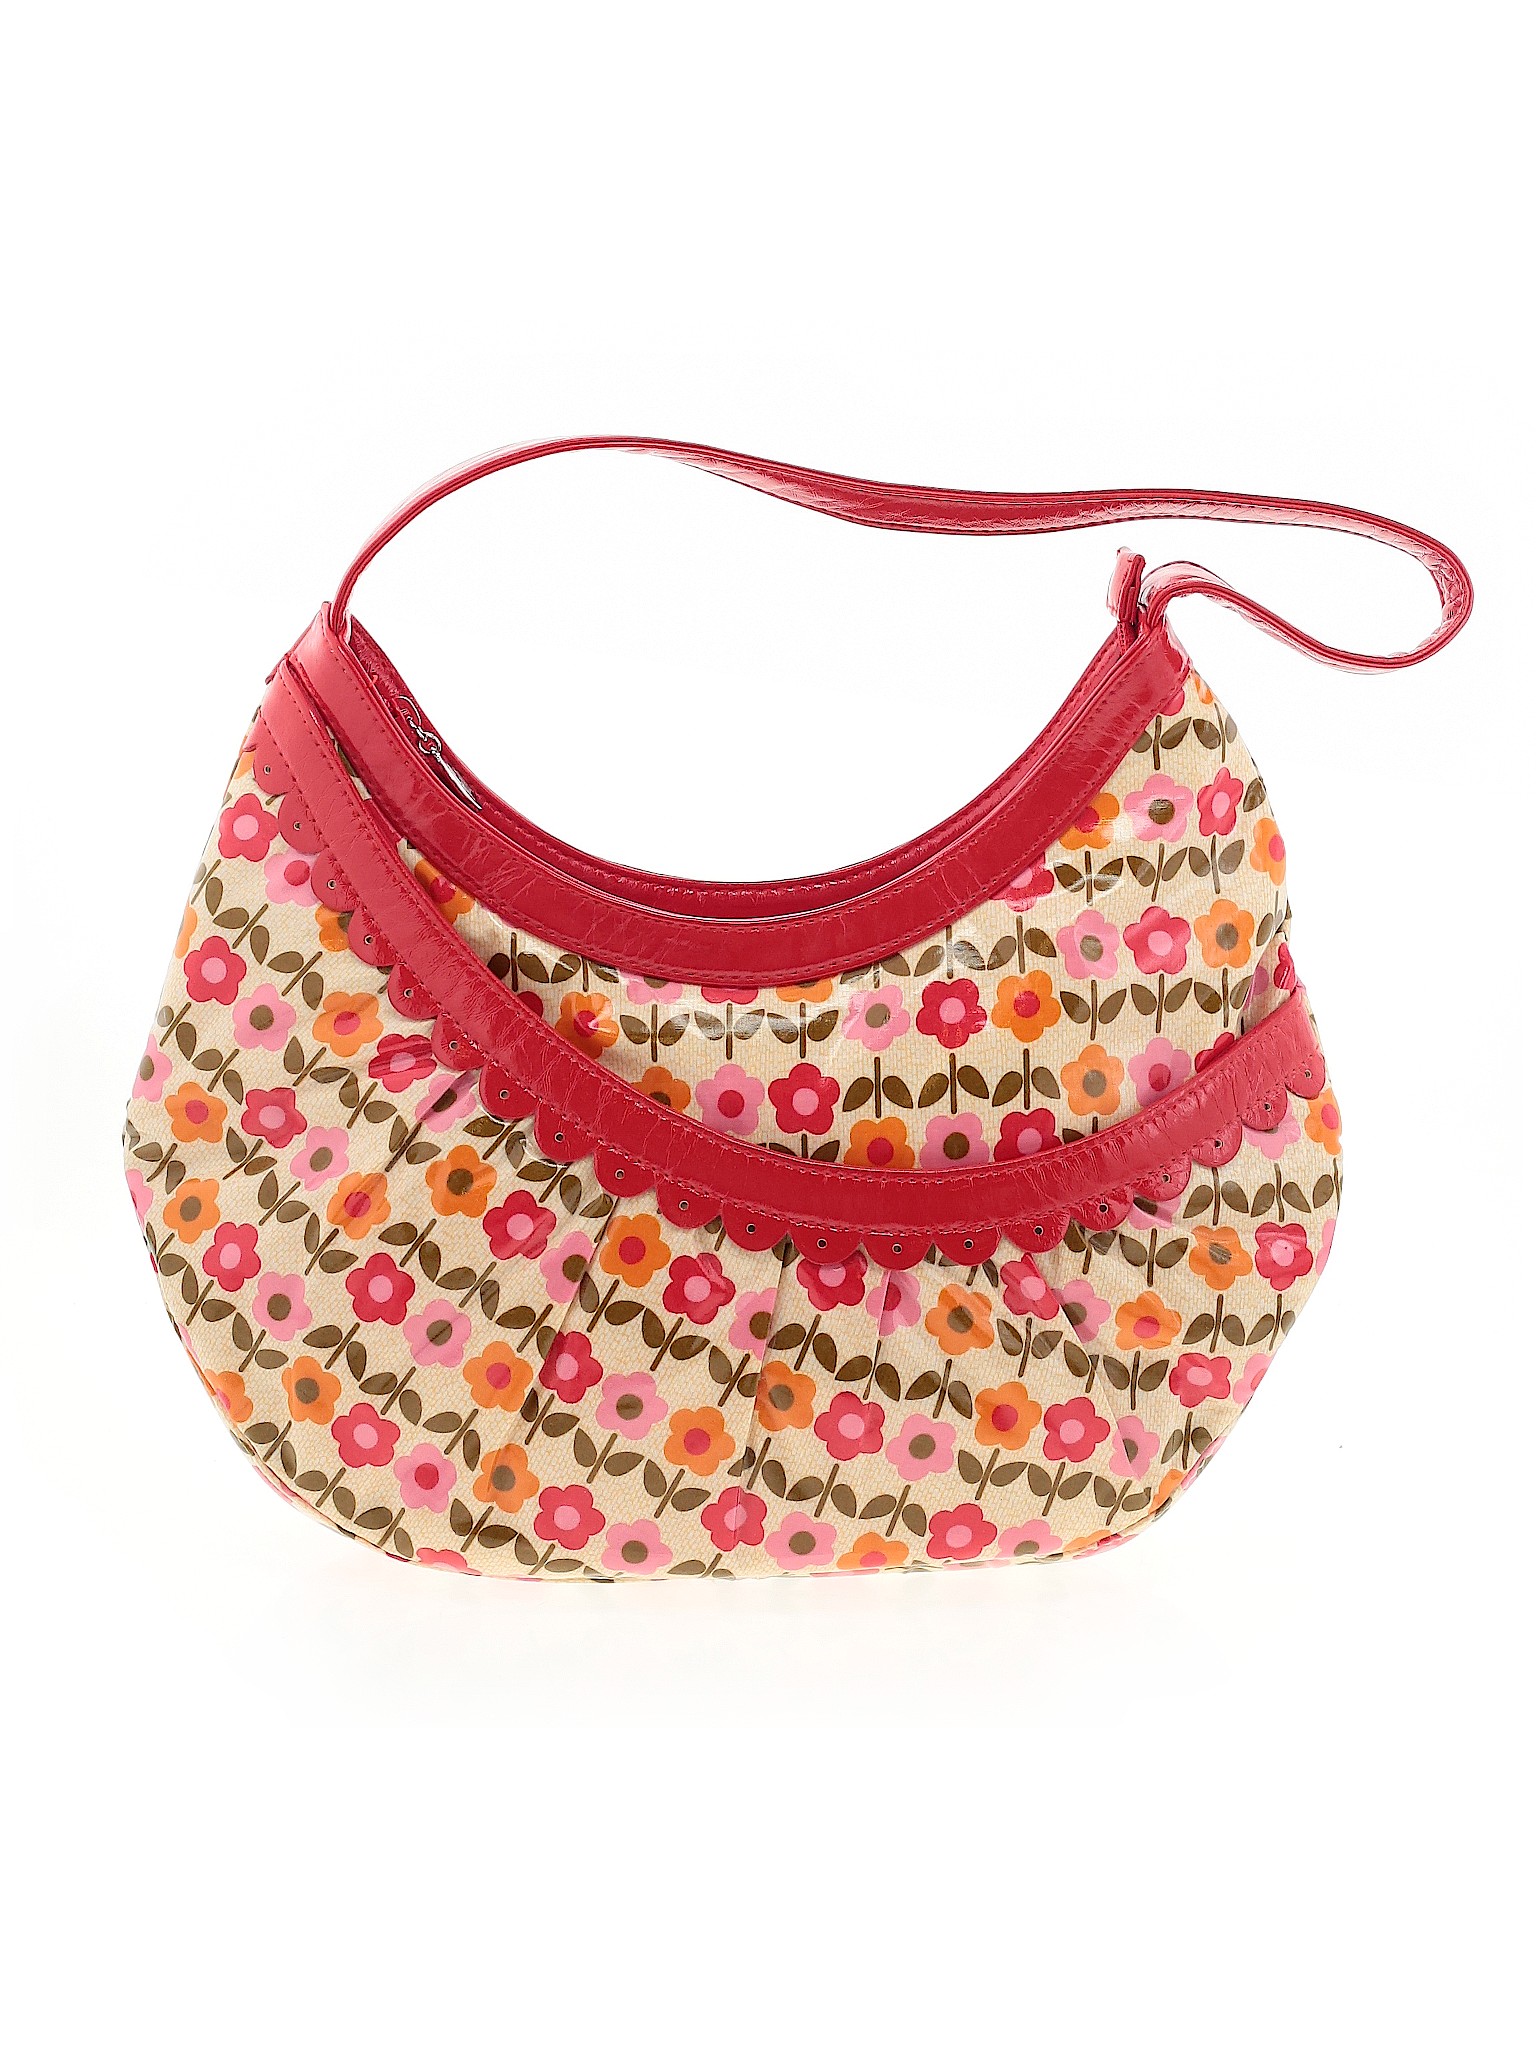 Frill Vera Bradley Color Block Floral Tan Shoulder Bag One Size - 48% ...